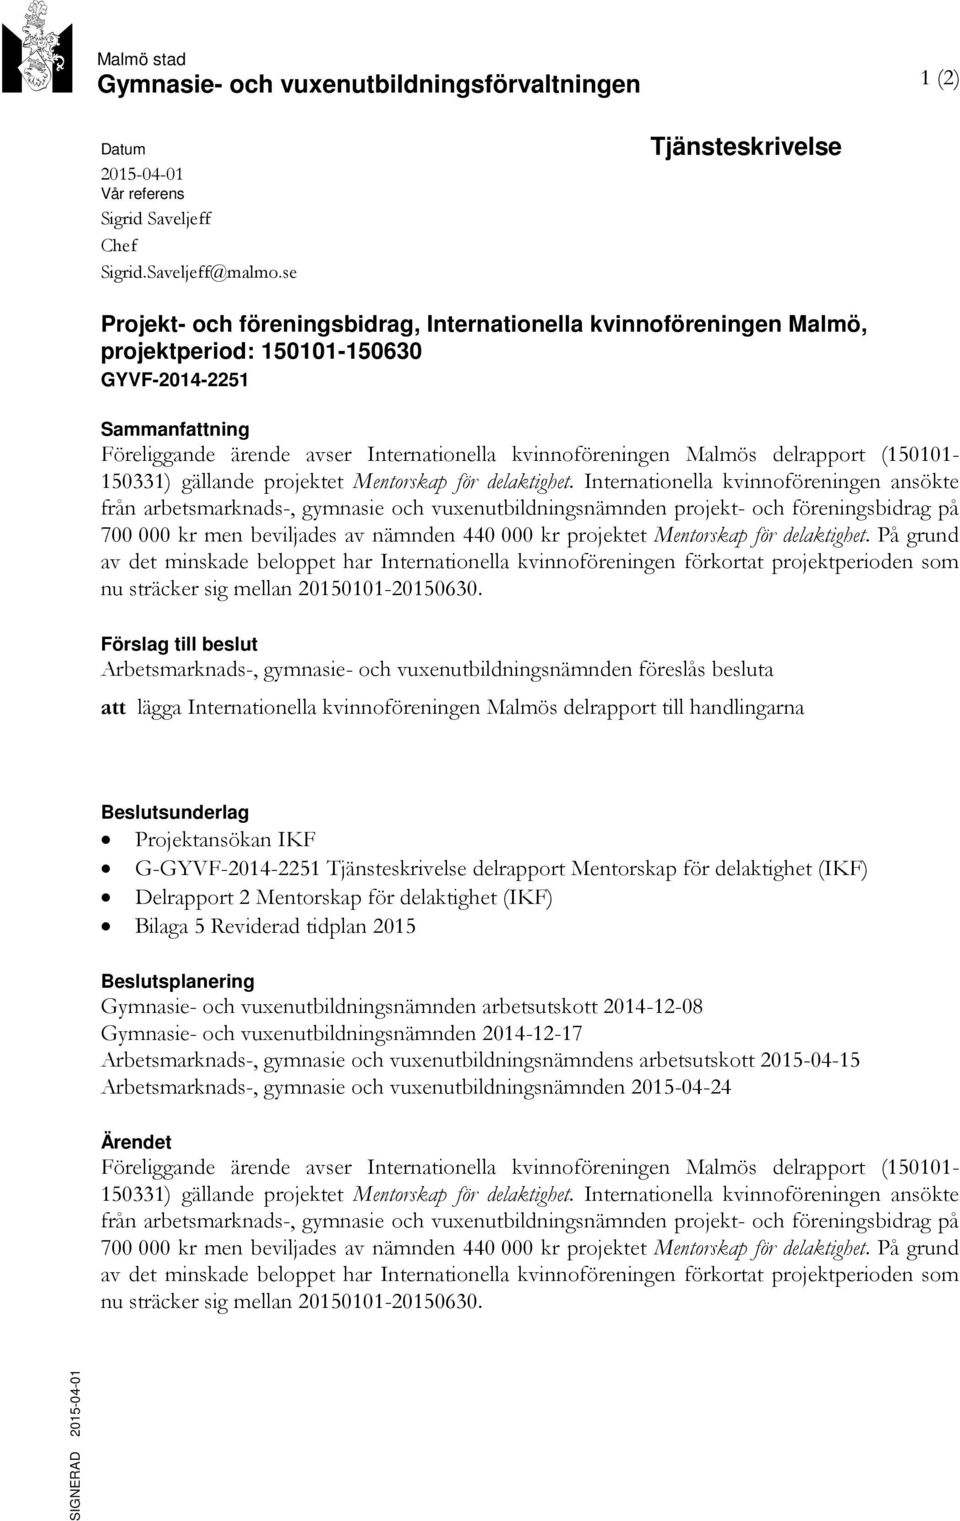 kvinnoföreningen Malmös delrapport (150101-150331) gällande projektet Mentorskap för delaktighet.